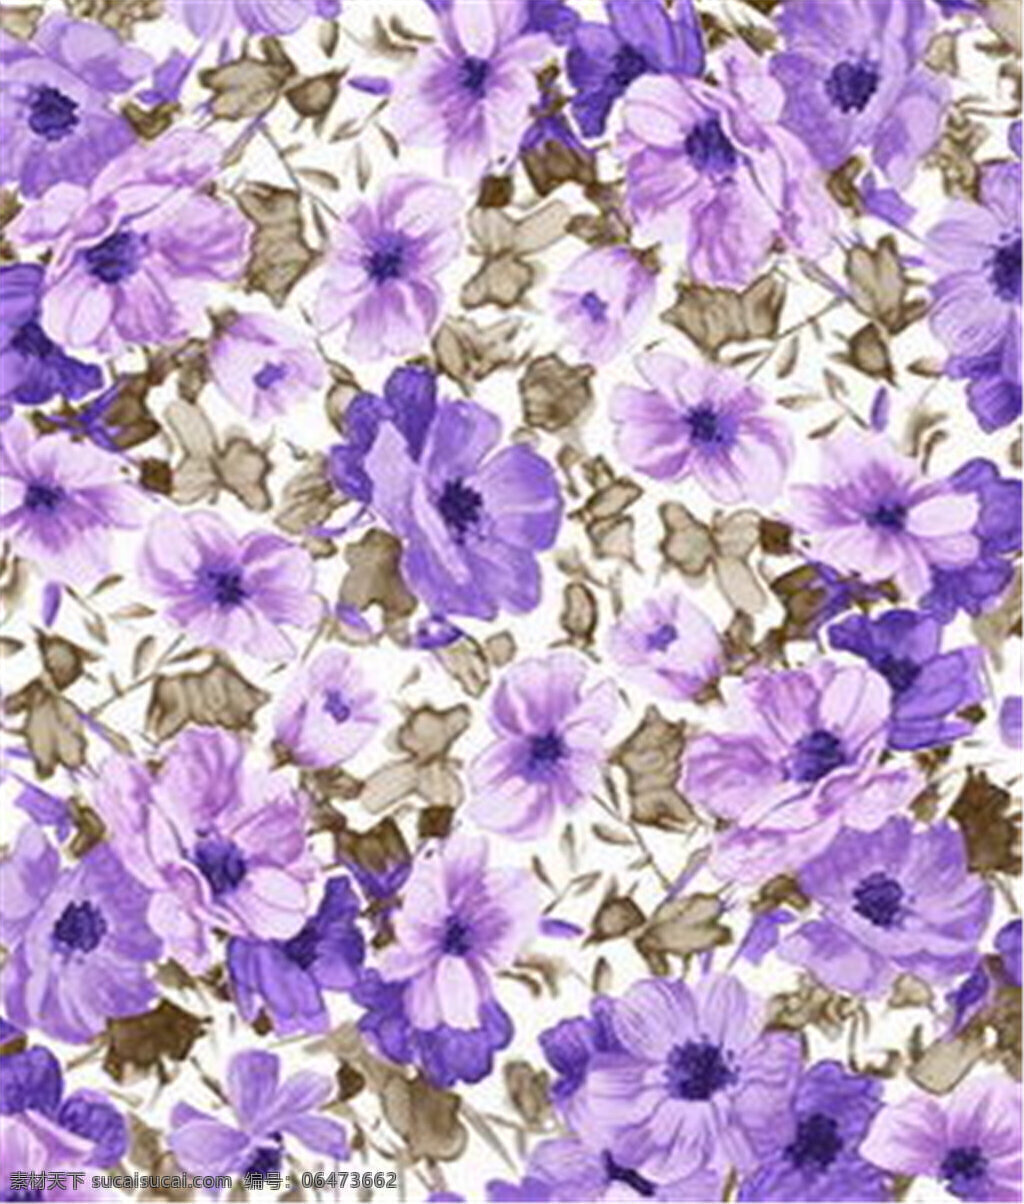 紫色 花朵 布纹 壁纸 中式花纹背景 壁纸素材 无缝壁纸素材 欧式花纹 壁纸图片下载 矢量壁纸 装饰素材 装饰设计 布纹壁纸 简约壁纸